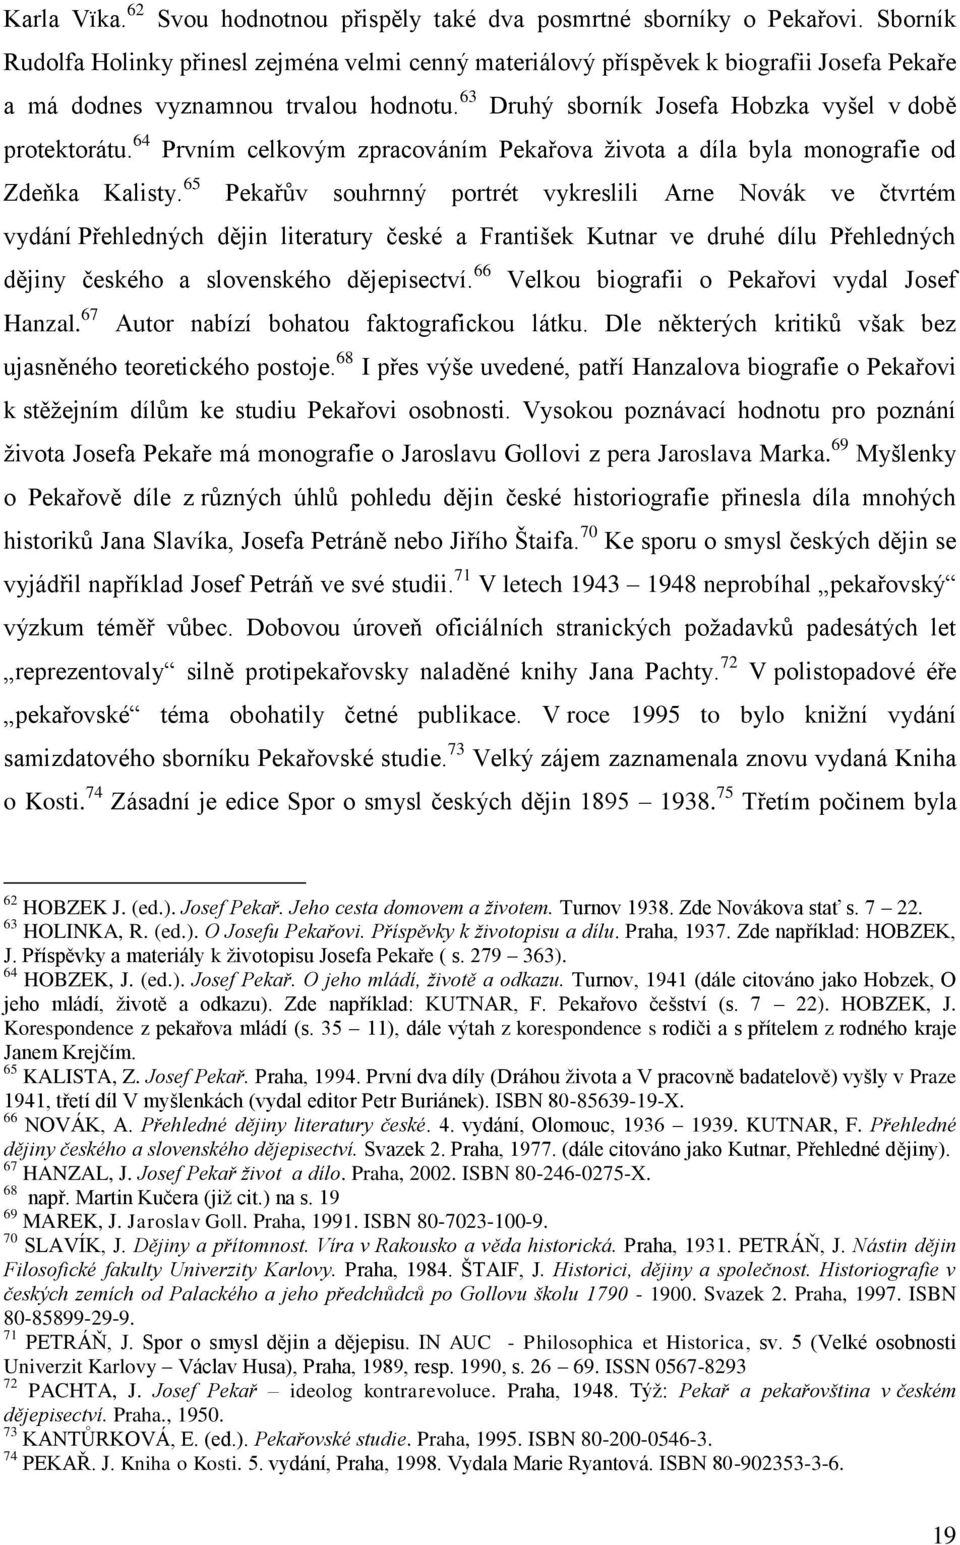 64 Prvním celkovým zpracováním Pekařova ţivota a díla byla monografie od Zdeňka Kalisty.